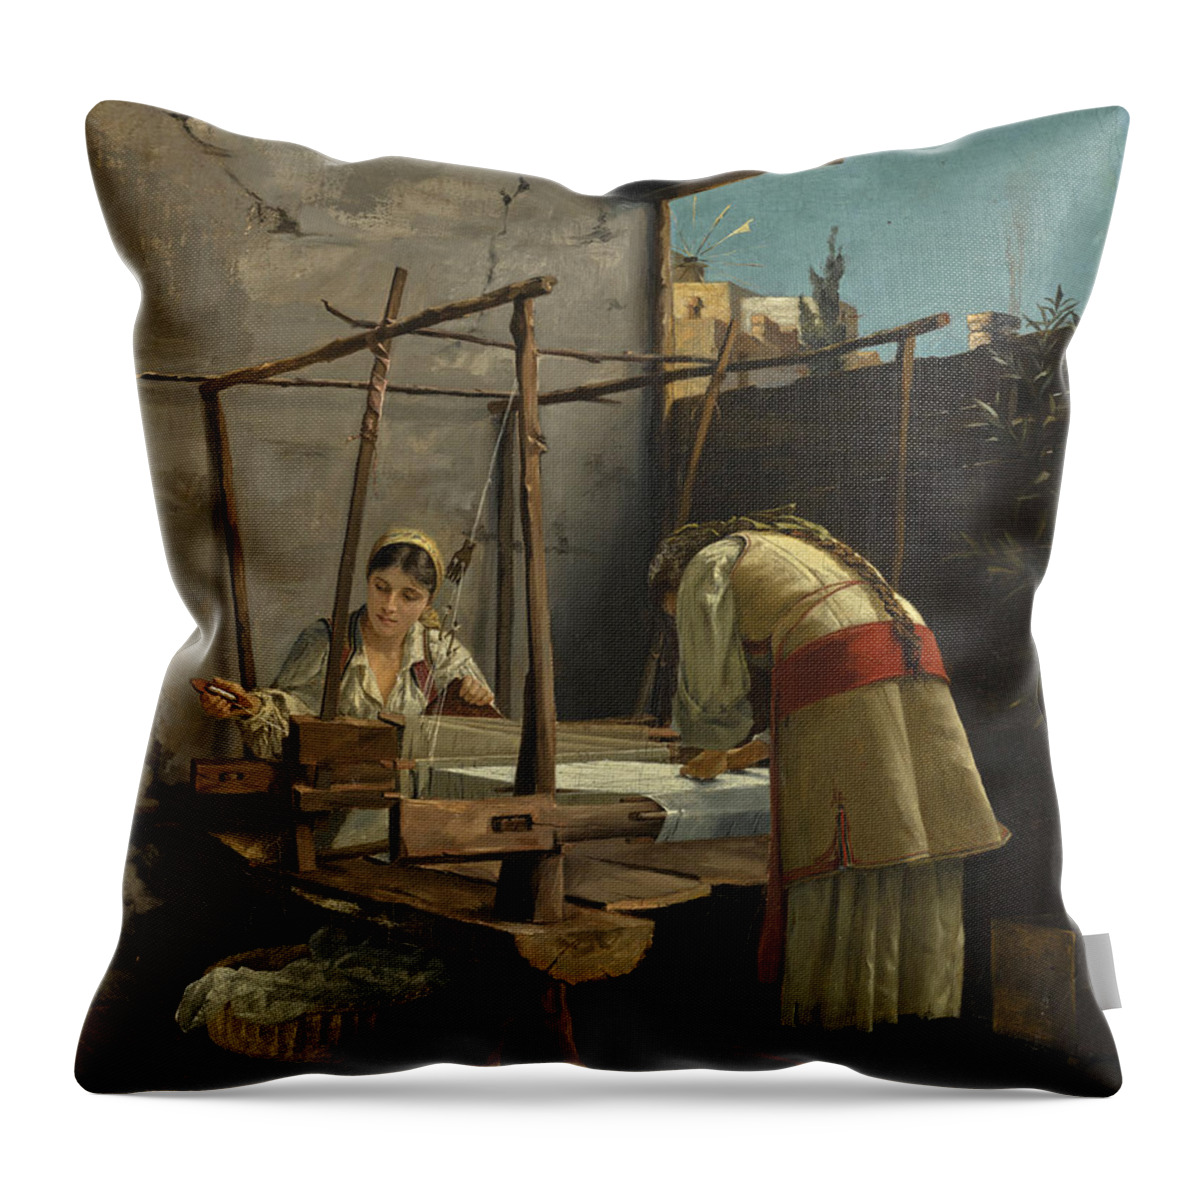 Theodoros Rallis Throw Pillow featuring the painting The Weavers, Arachova by Theodoros Rallis